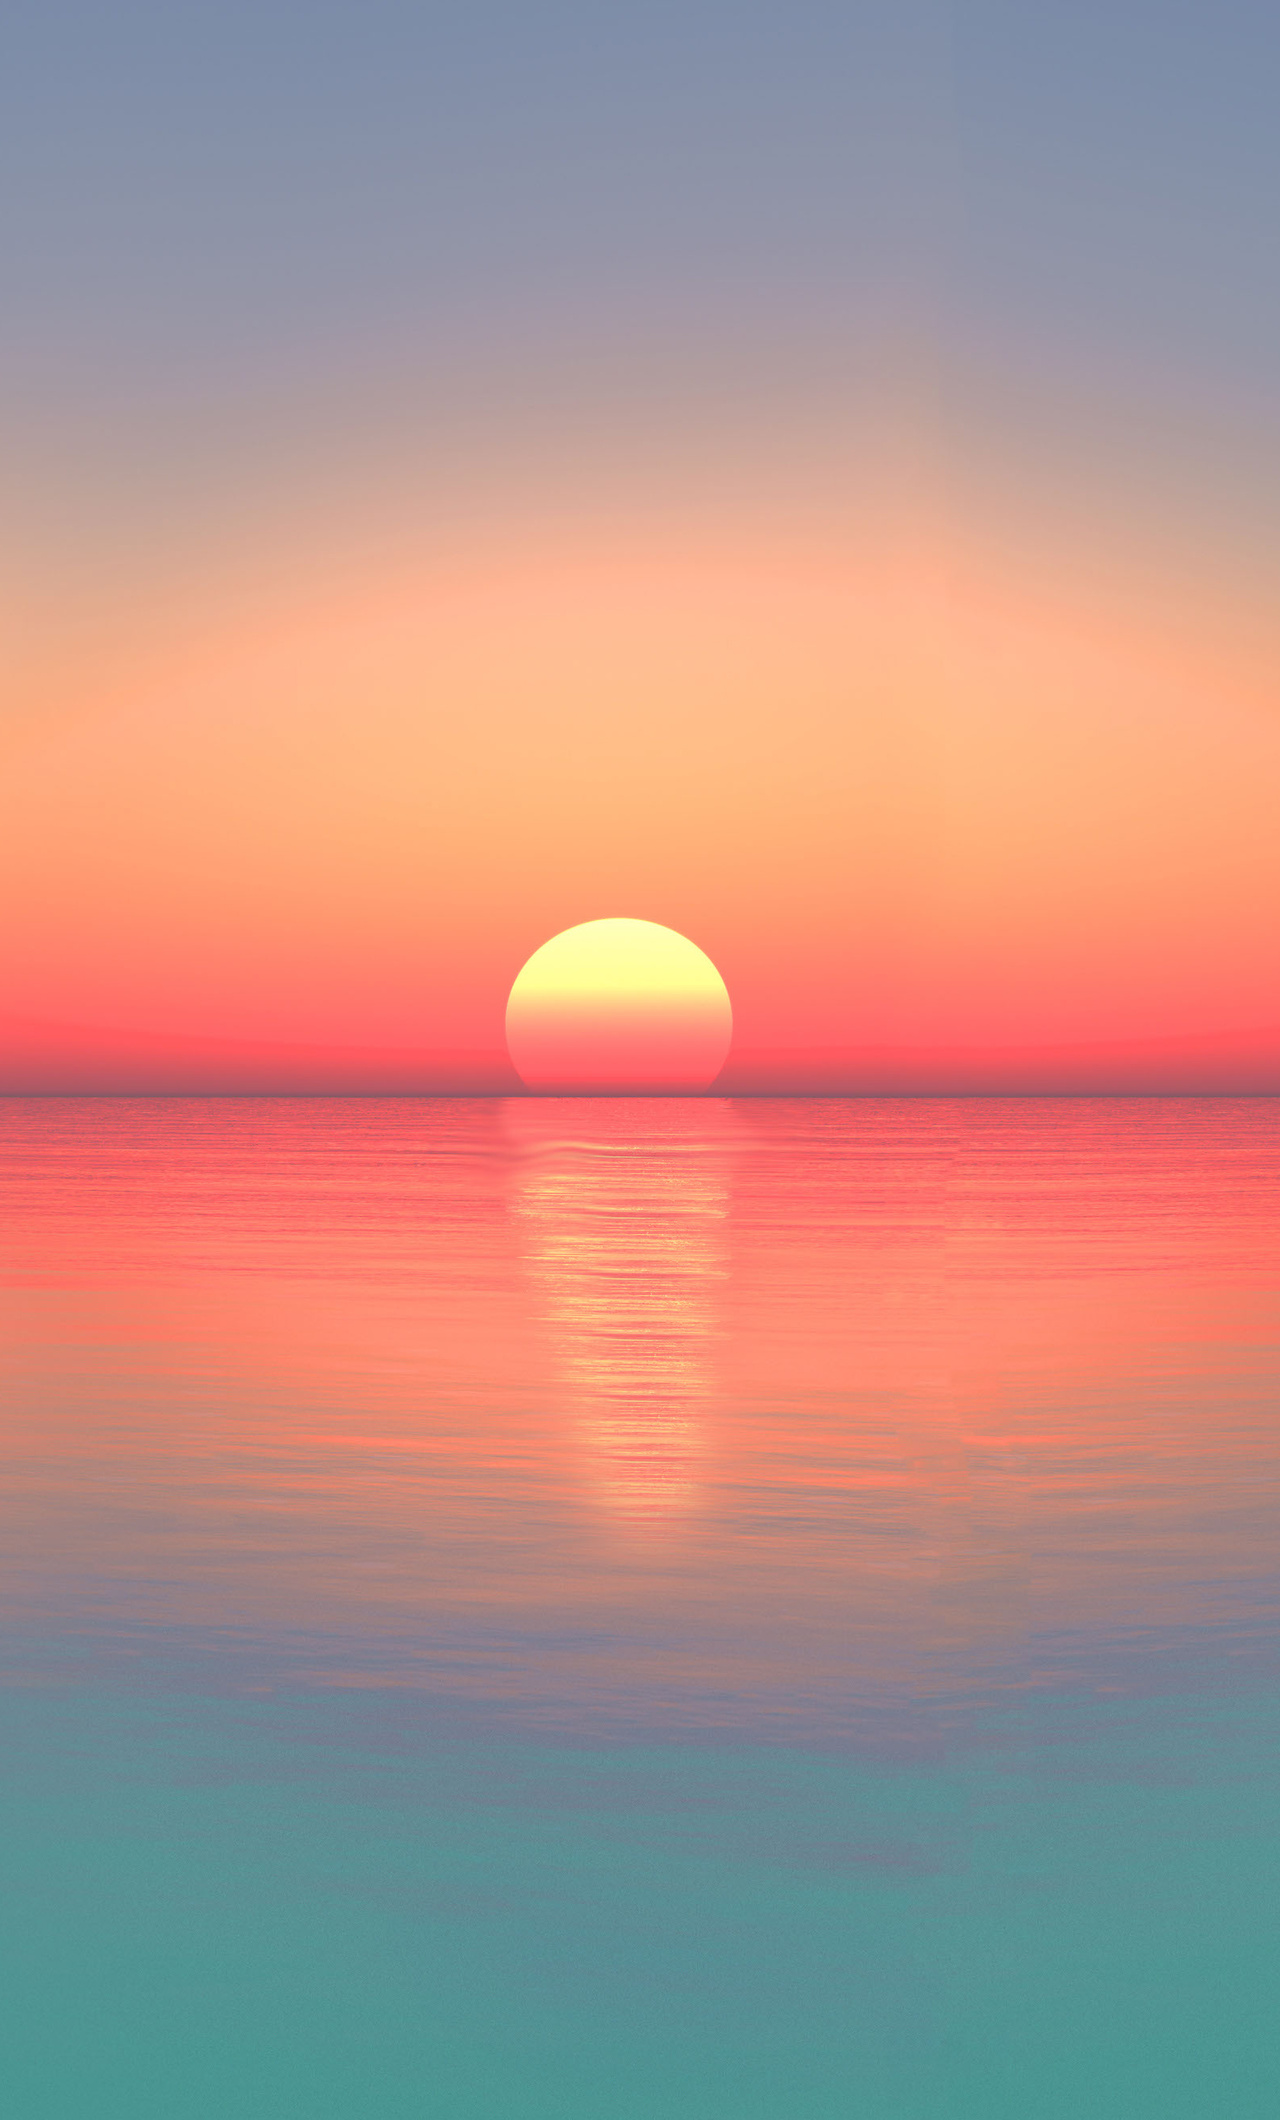 1280x2120 Calm Sunset Ocean Digital Art 5k iPhone 6+ HD 4k ...